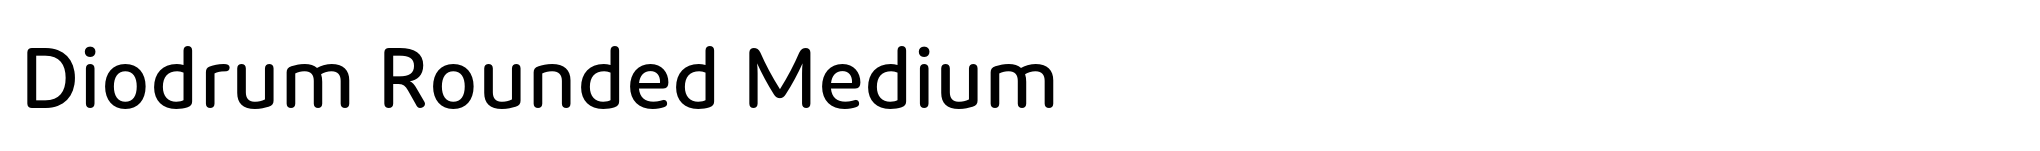 Diodrum Rounded Medium image